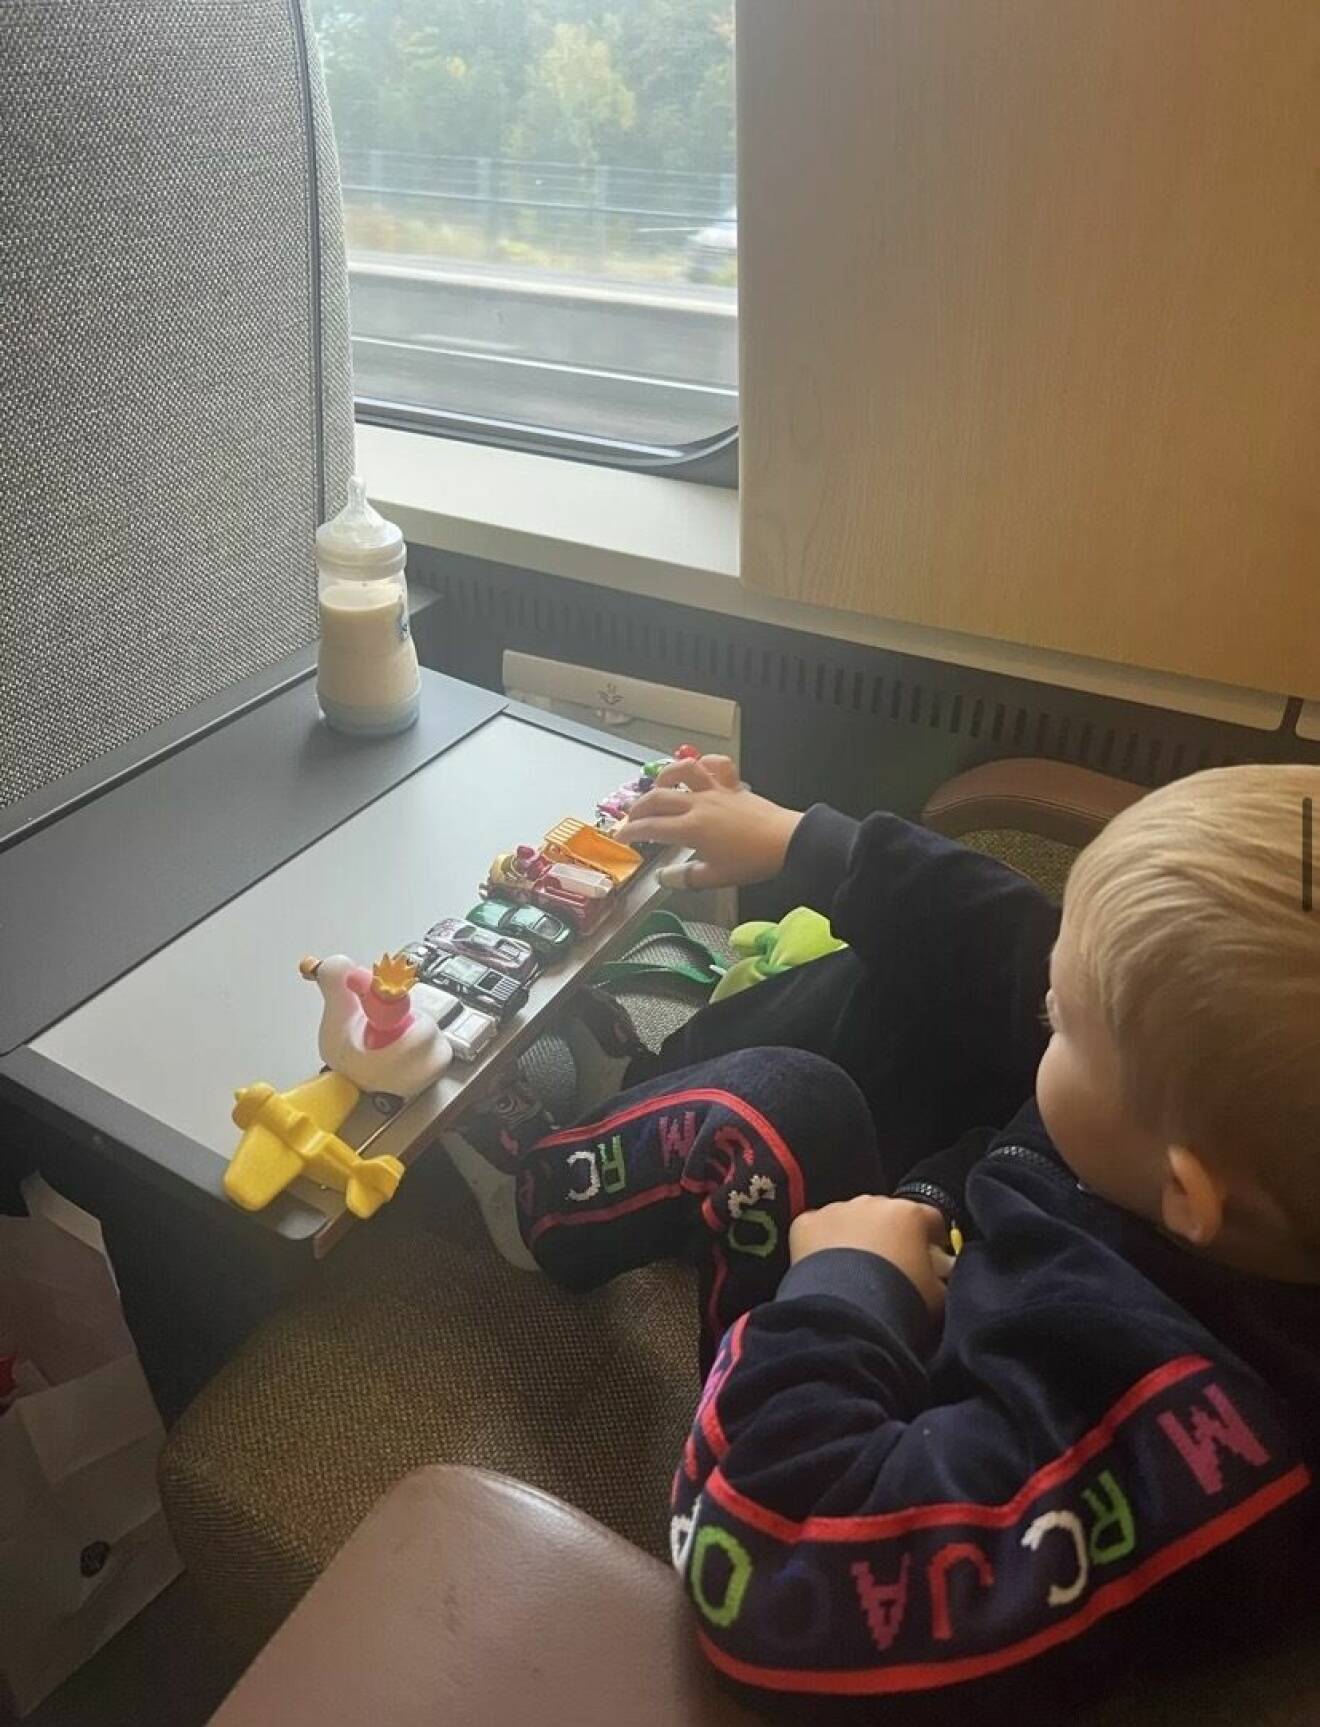 Alvin på tåget med sin mamma när han ställt upp flera leksaker på bordet.